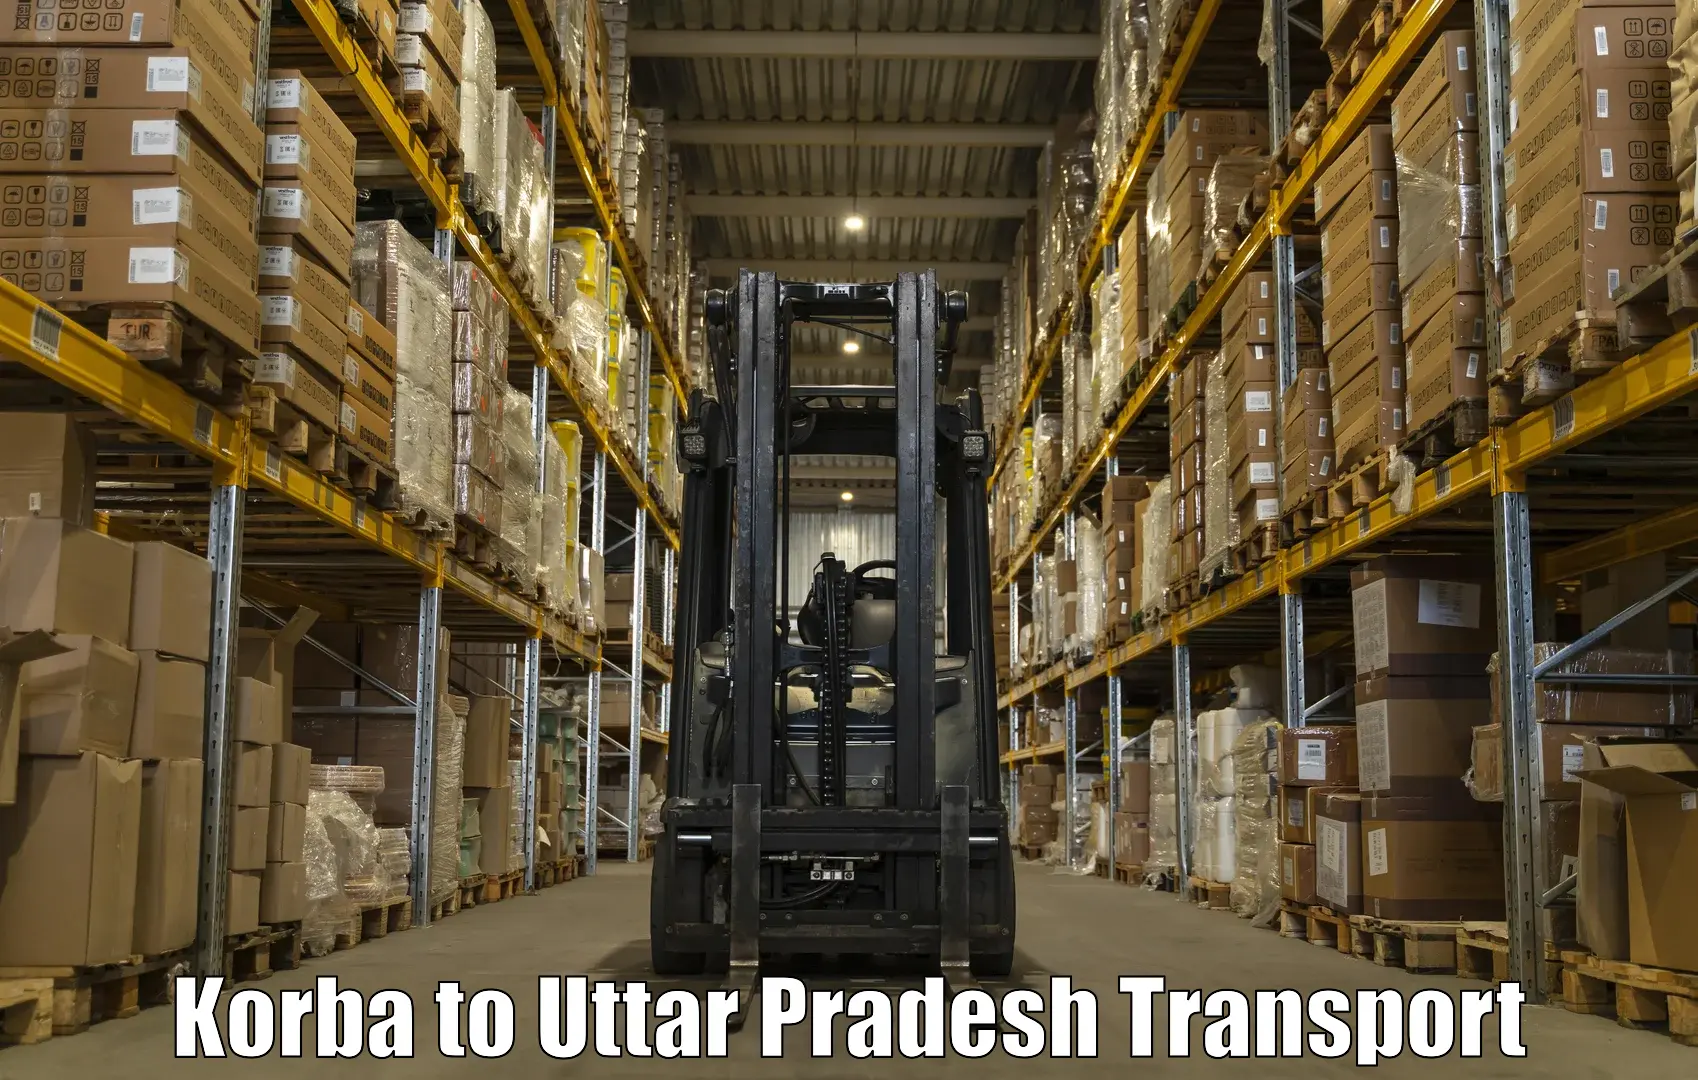 Pick up transport service Korba to Agra